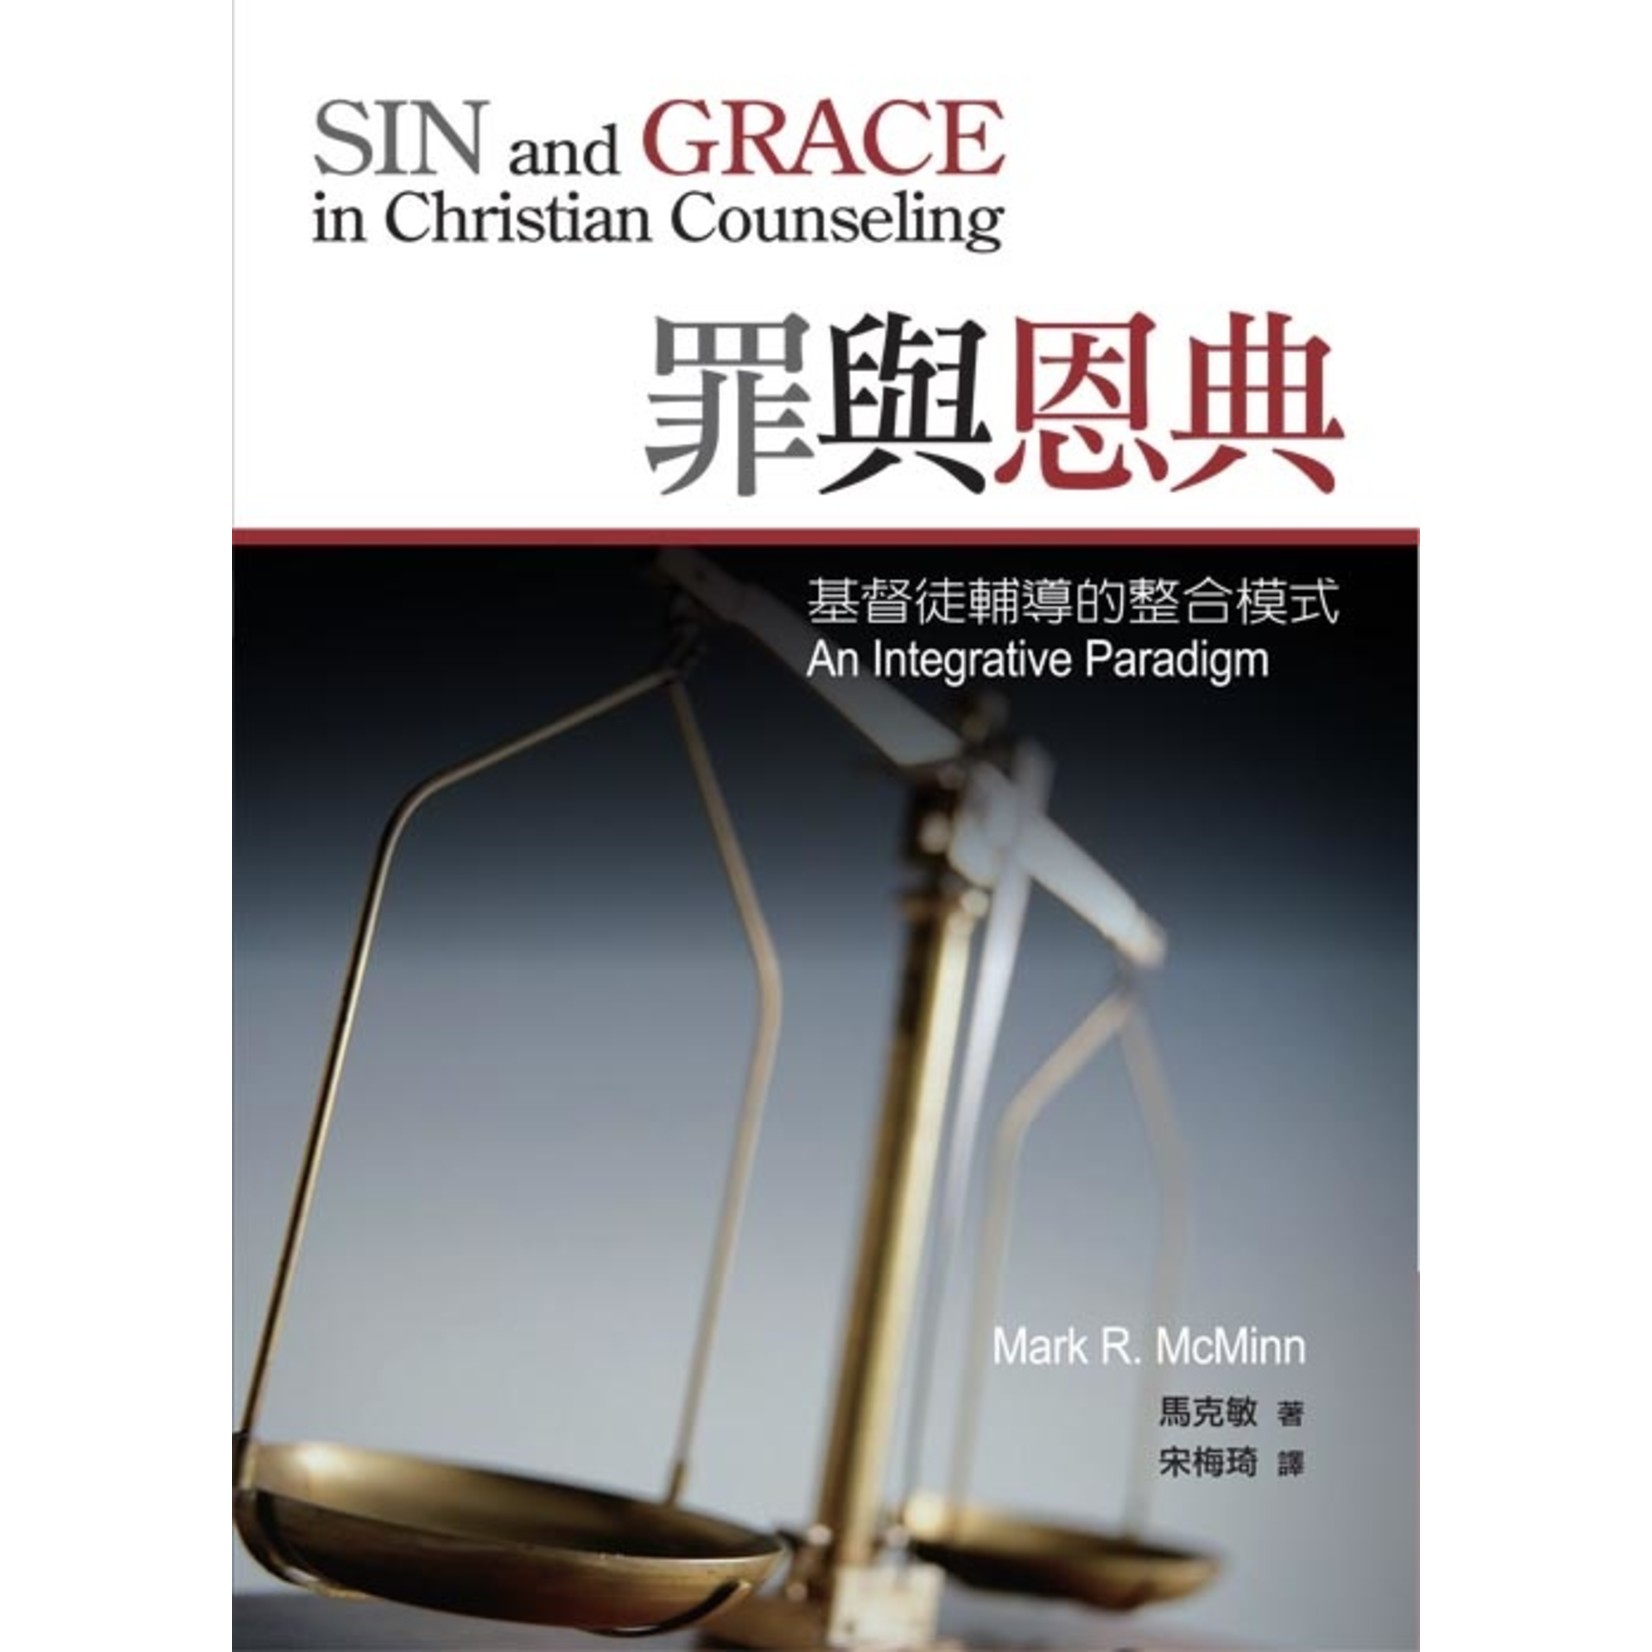 罪與恩典 基督徒輔導的整合模式sin And Grace In Christian Counseling An Integrative 天道南加州網路書房u S Tien Dao Books